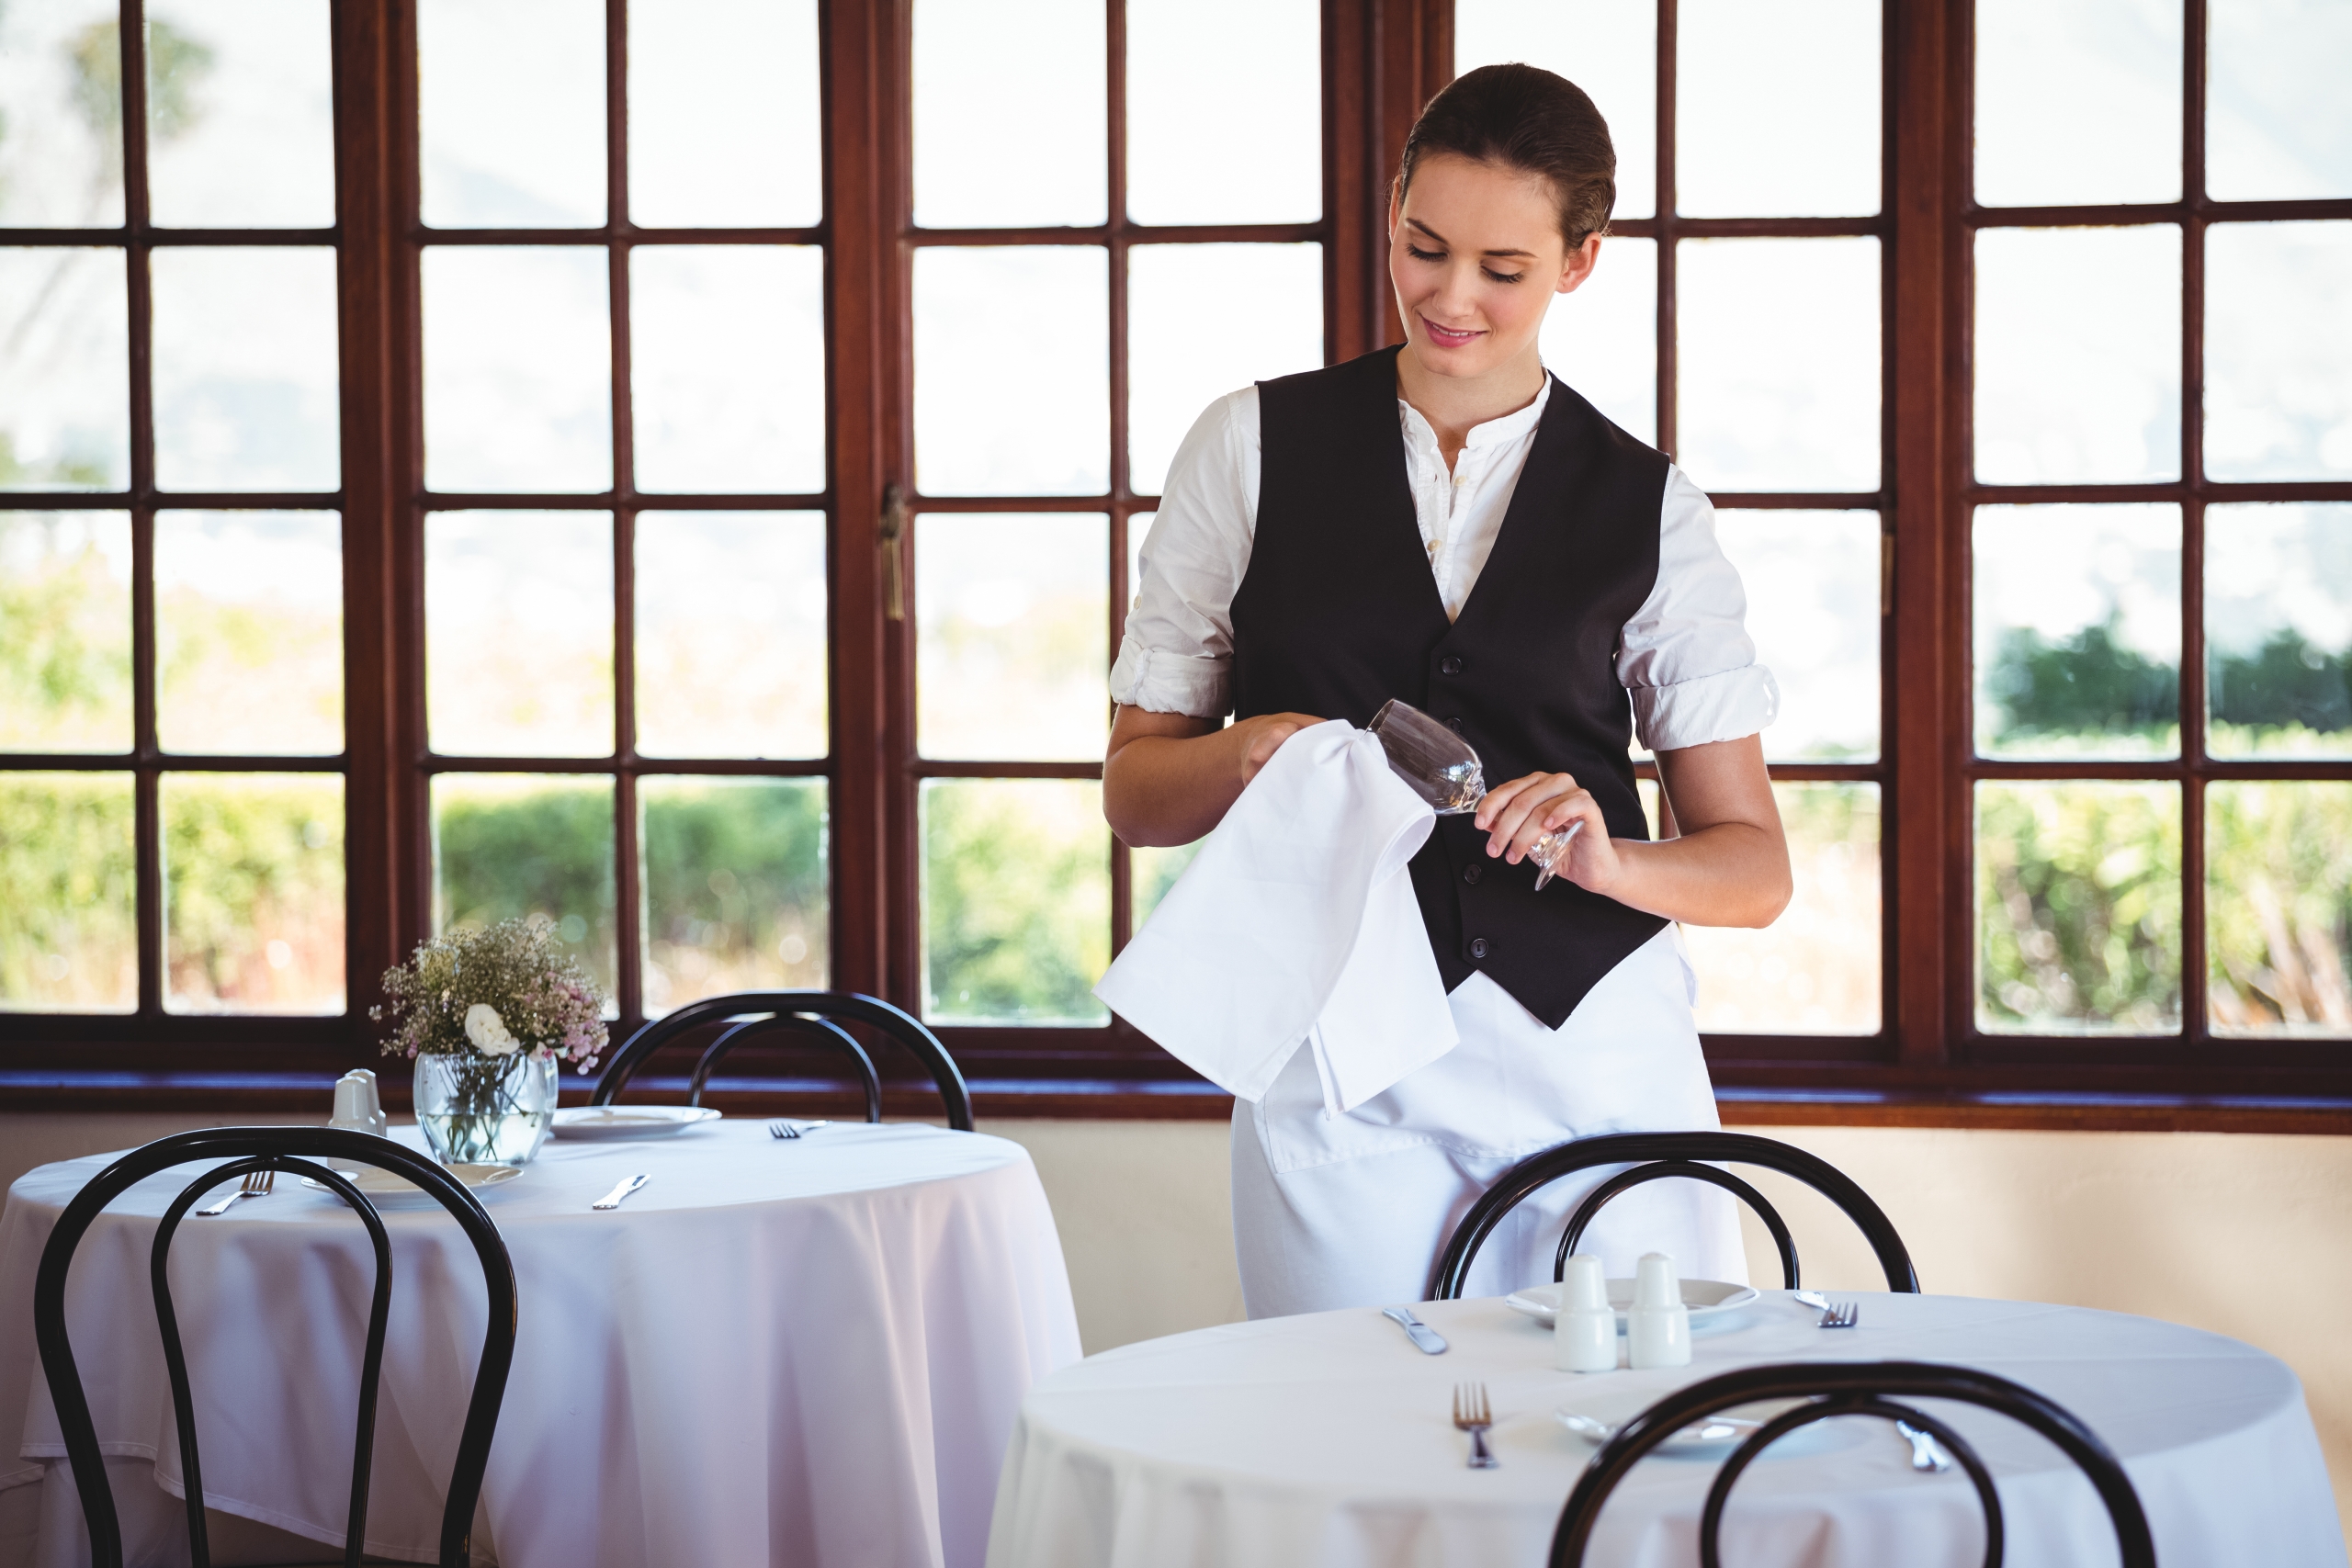 service advantage hospitality